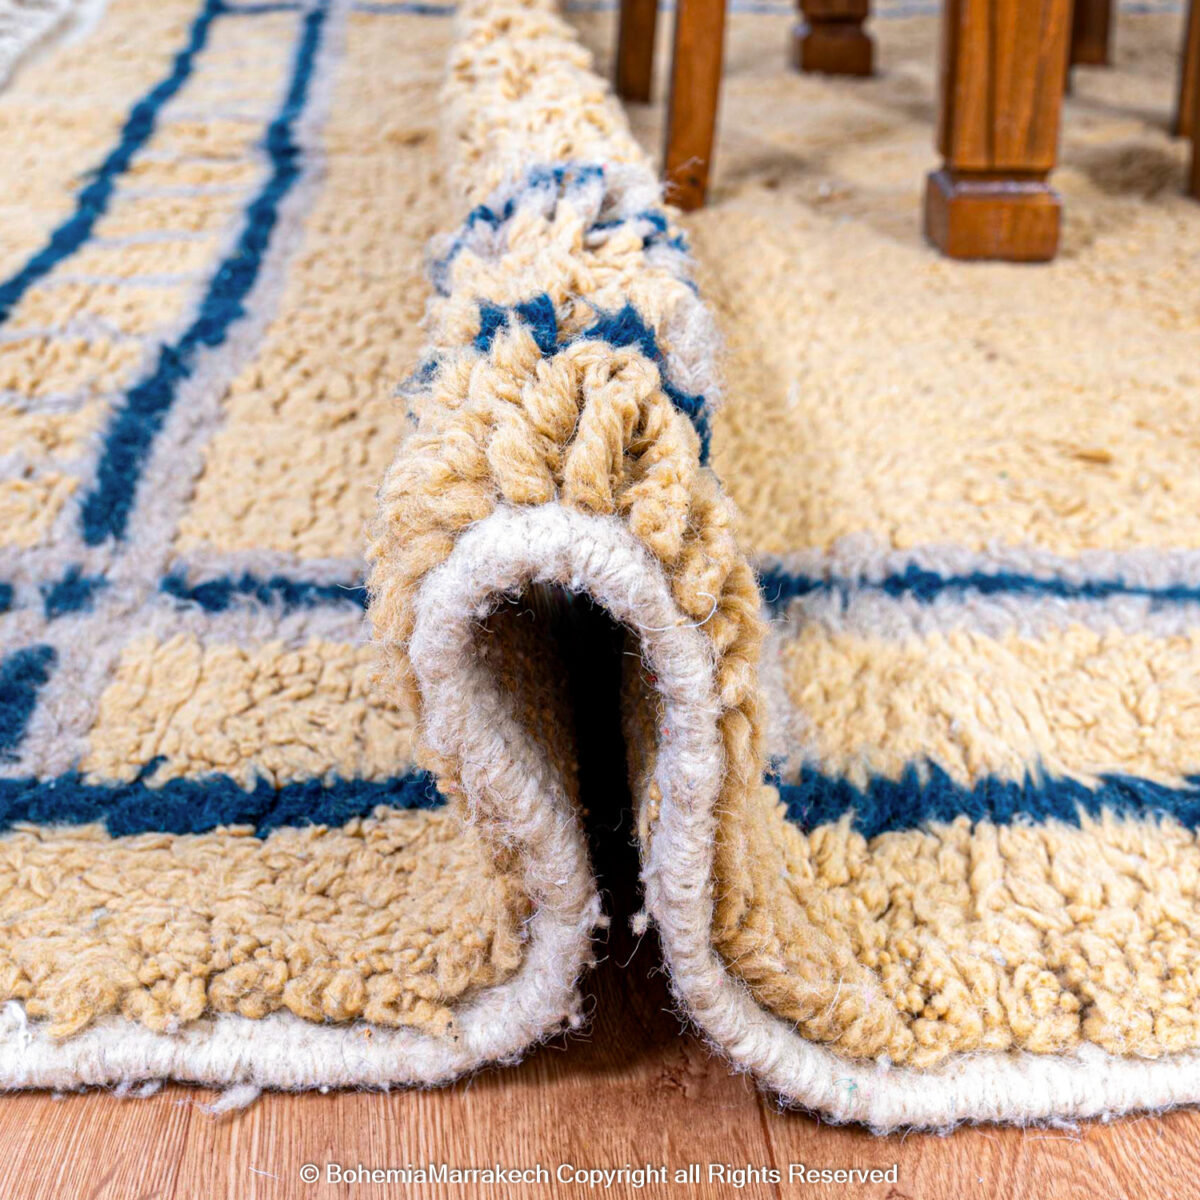 rugs, rugs and rugs, rug rugs, carpet, carpet carpets, berber carpet, berber flooring, rug shops near me, wool rugs, wool for rug, vintage rugs, moroccan rugs, rugs from morocco, rugs kilim, wool carpet, carpet rugs, beni rugs, best rugs, berber rug, unique rugs, rug online, carpets and rugs online, berber carpet rug, beni carpets, carpet rugs online, mats rugs, rugs designs, tribal rugs, handmade rugs, handmade carpet, hand made carpet, carpets mats, luxury rugs, beni ourain rug, hand woven rugs, carpet and rugs, beni ourain carpets, hand woven carpets, carpet manufacturer, rug shops, berber carpet colors, berber carpet colours, berber rug colors, berber area rugs, custom made carpets, shop vintage rugs, berber carpet pricing, wholesale rugs and carpets, vintage rugs for sale, beautiful rugs.